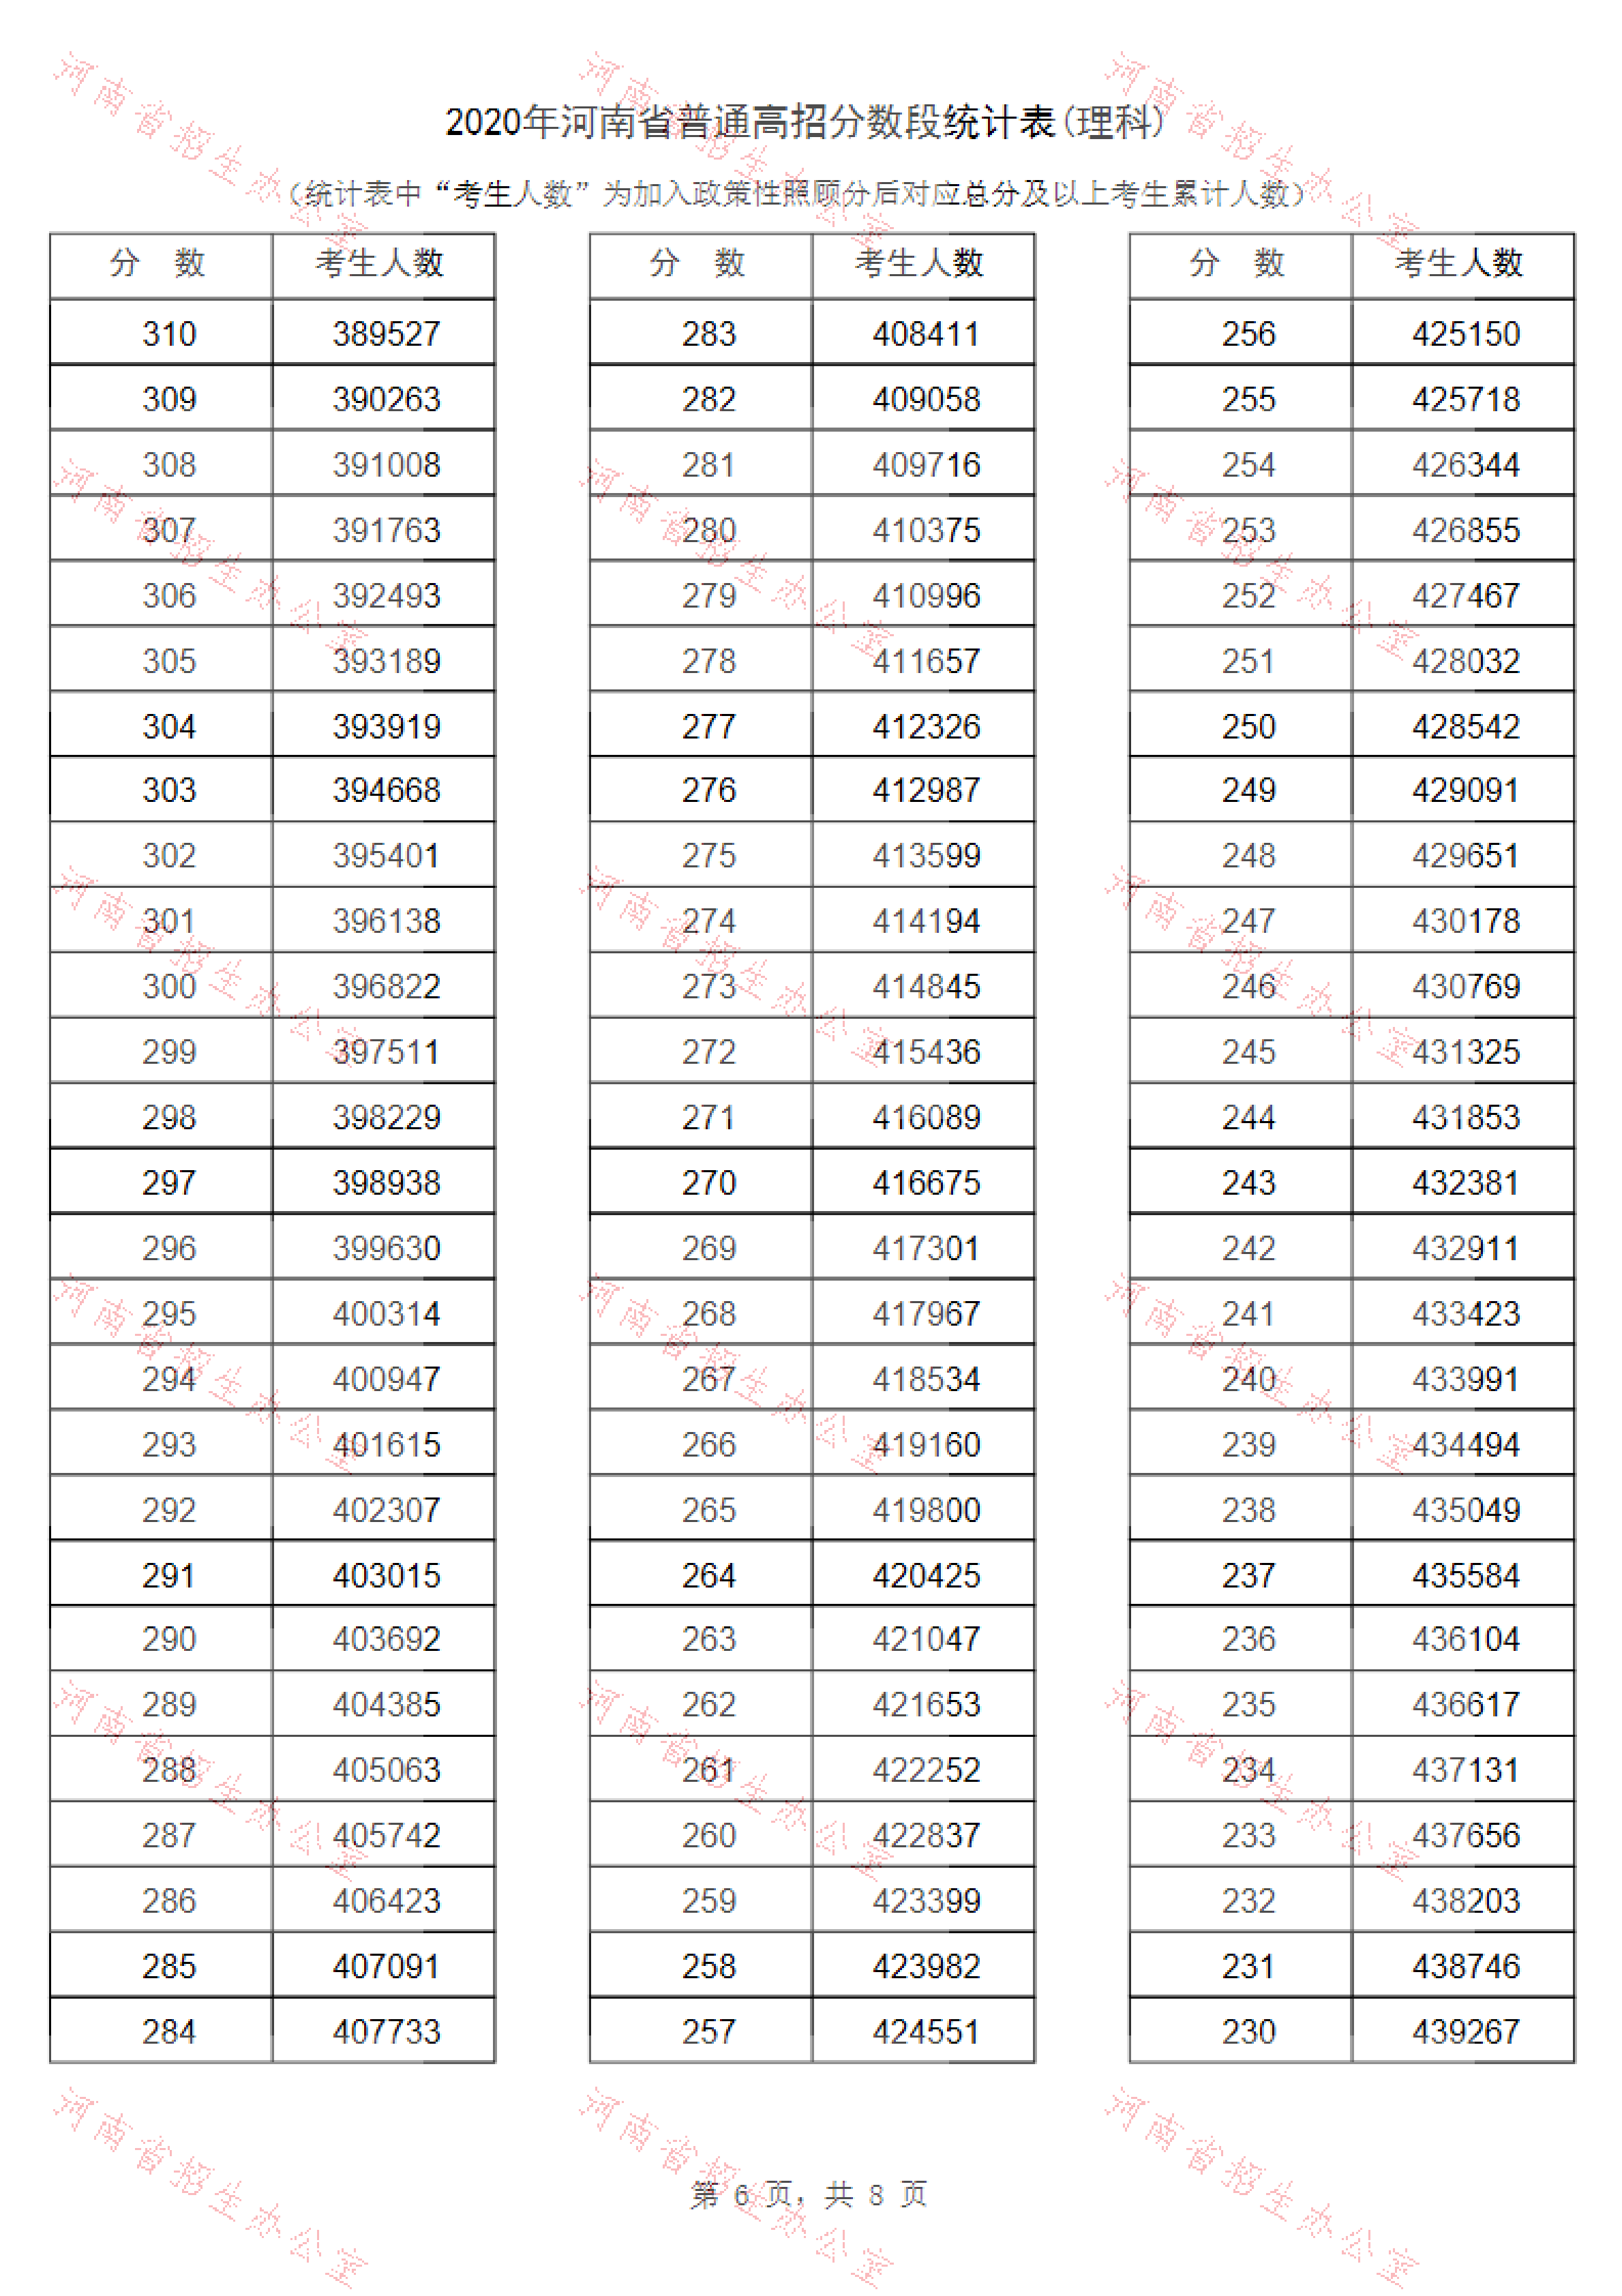 2020年河南高考文科/理科成绩排名 一分一段表